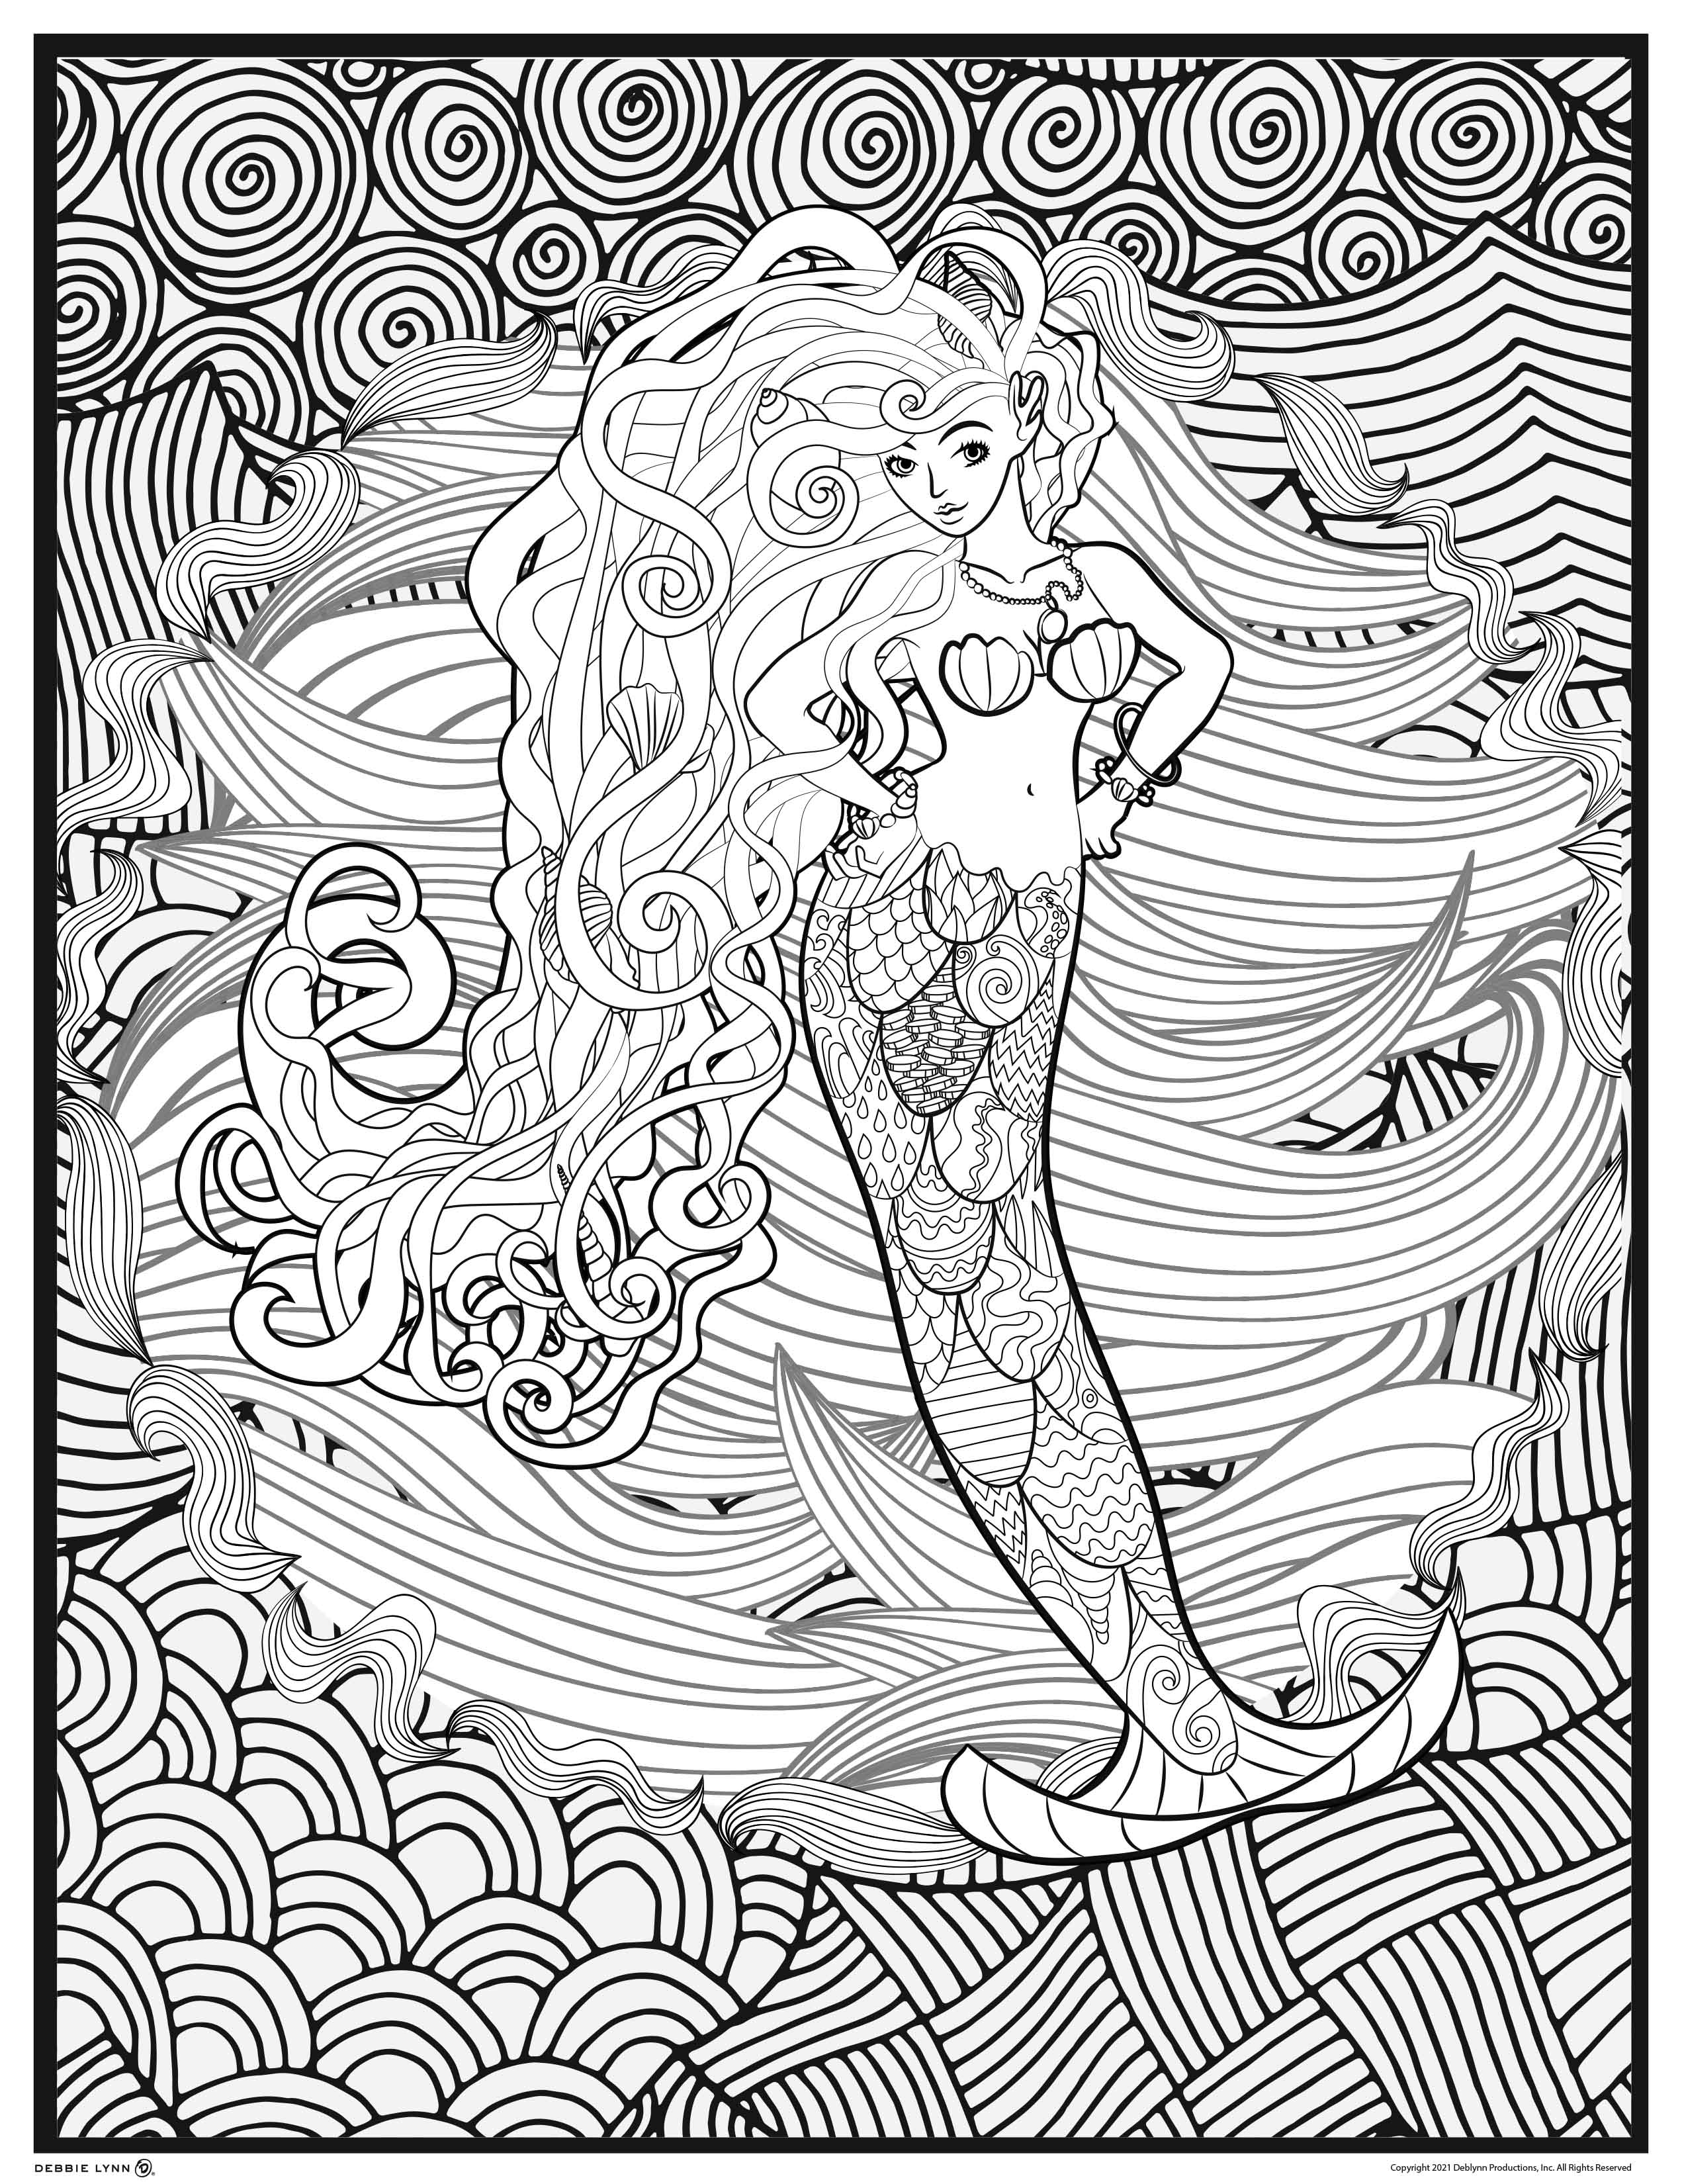 Mermaid coloring ebook â debbie lynn